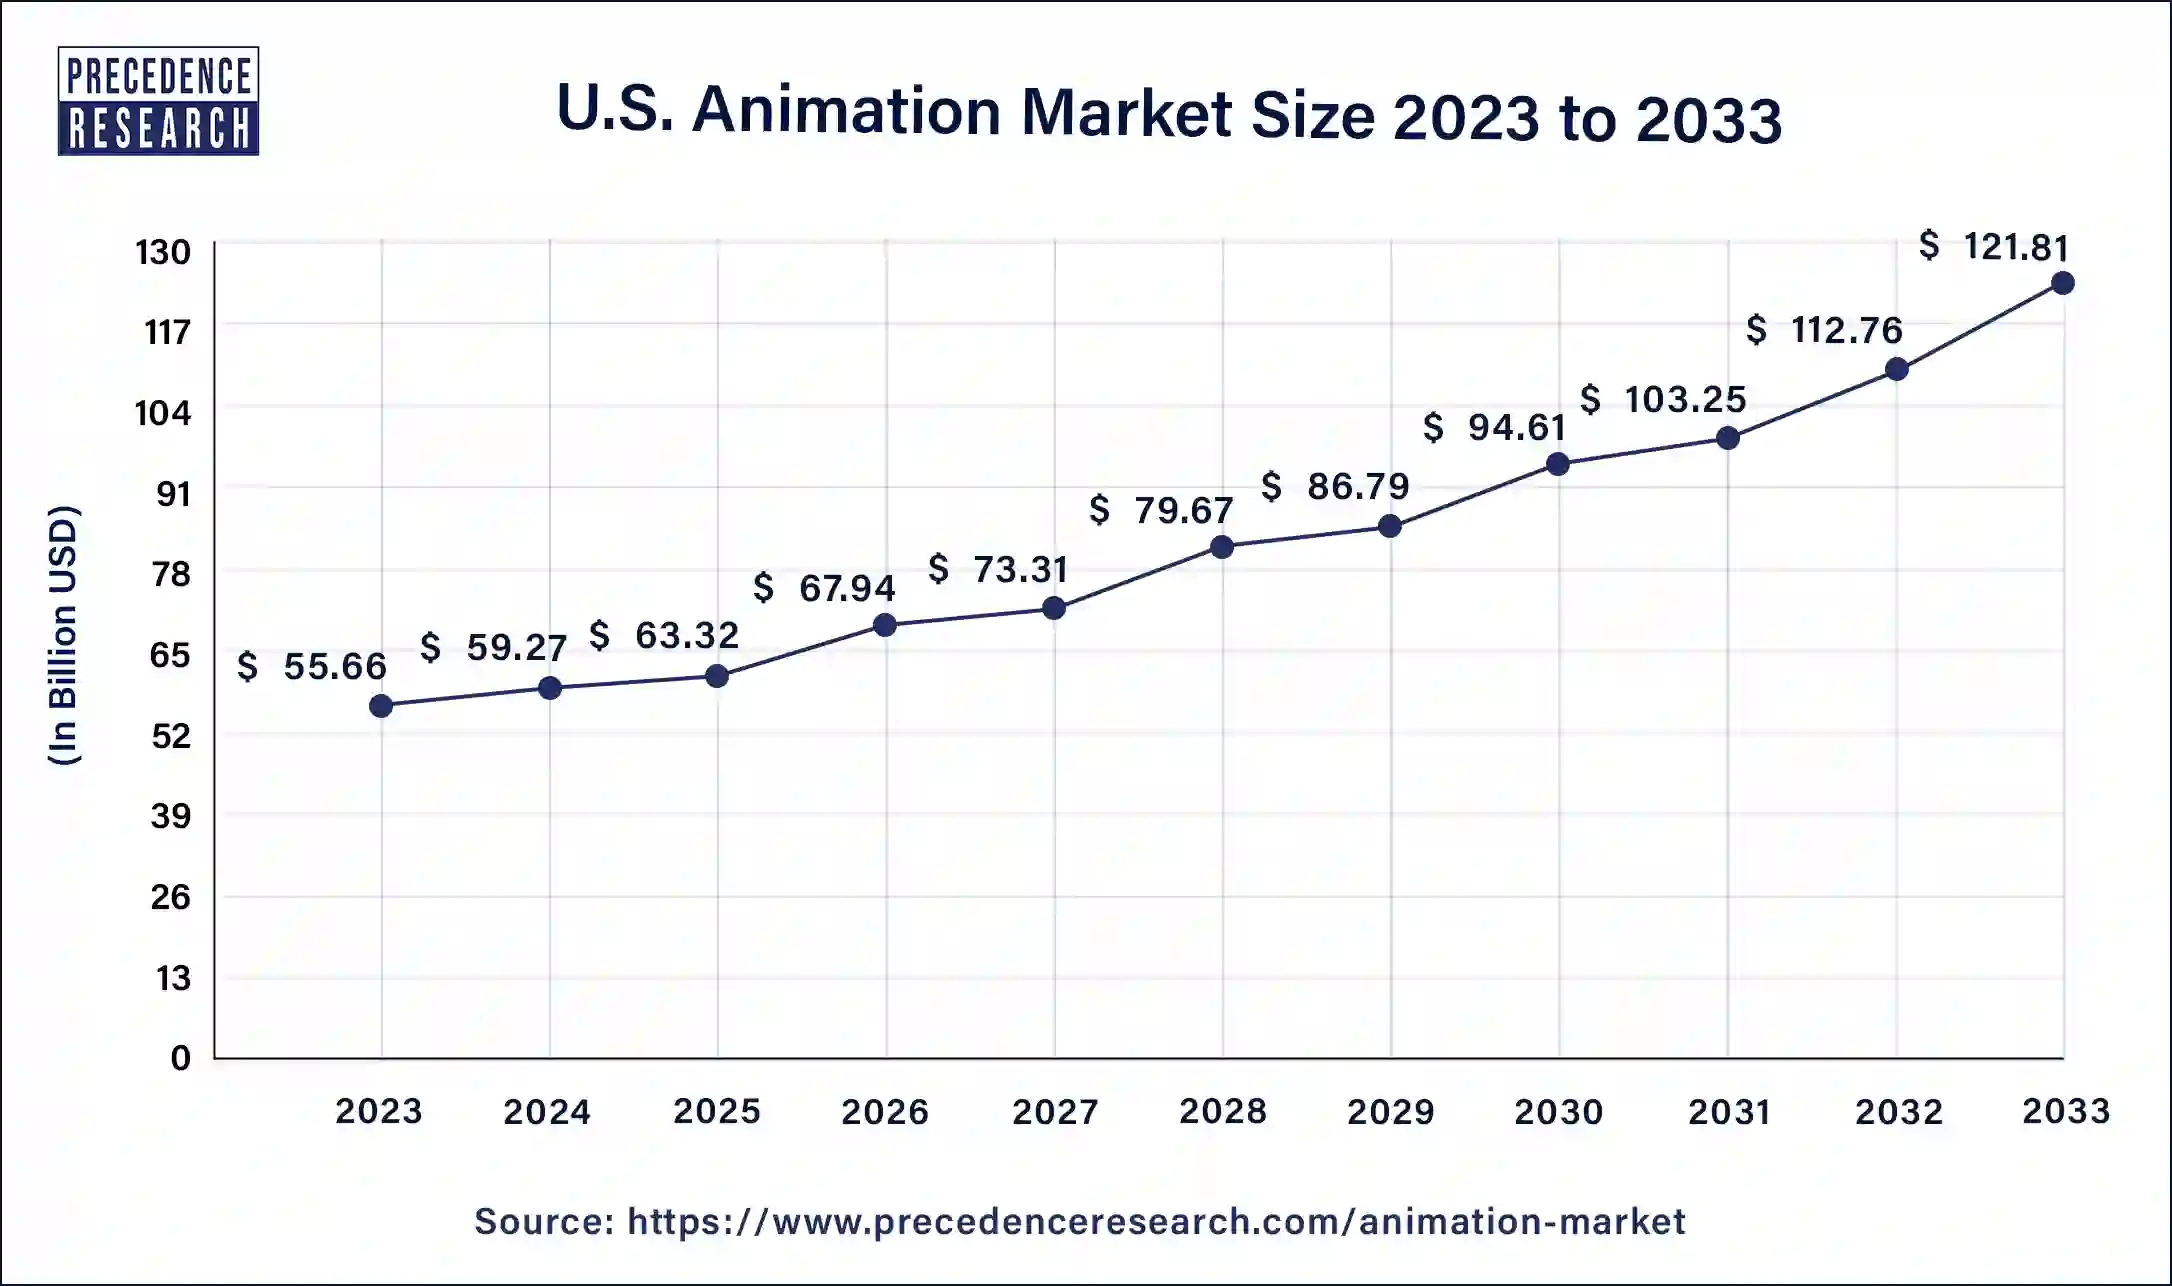 U.S. Animation Market Size 2024 to 2033